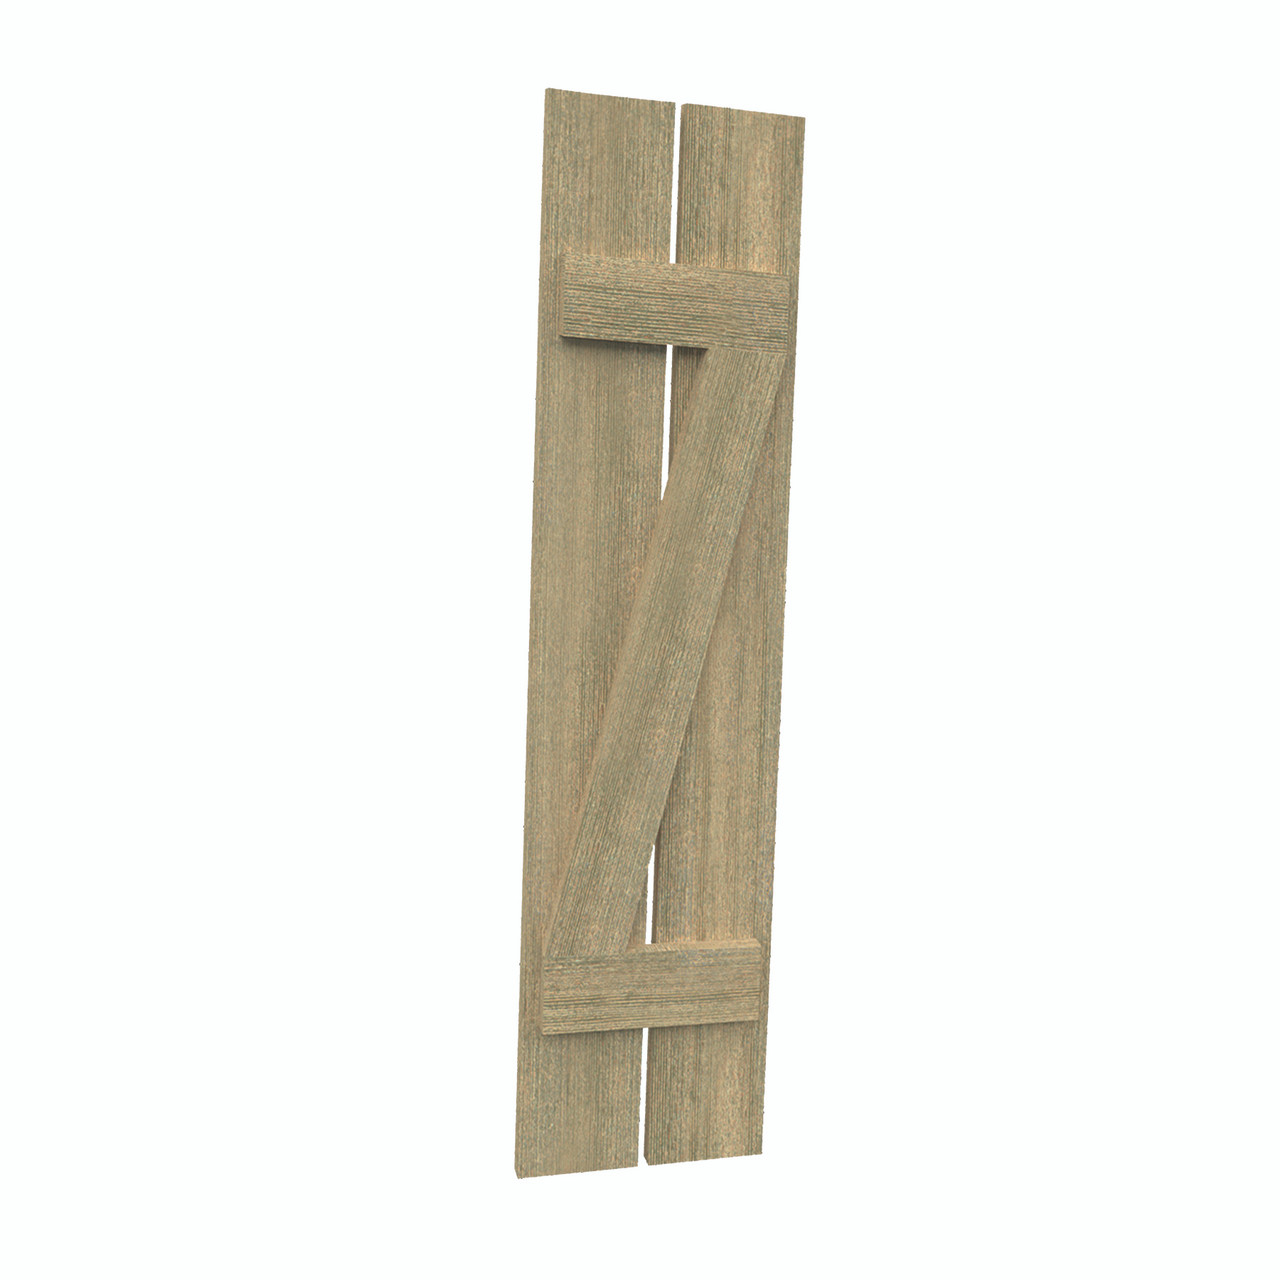 12 inch by 50 inch Plank Shutter with 2-Plank, Z-Batten